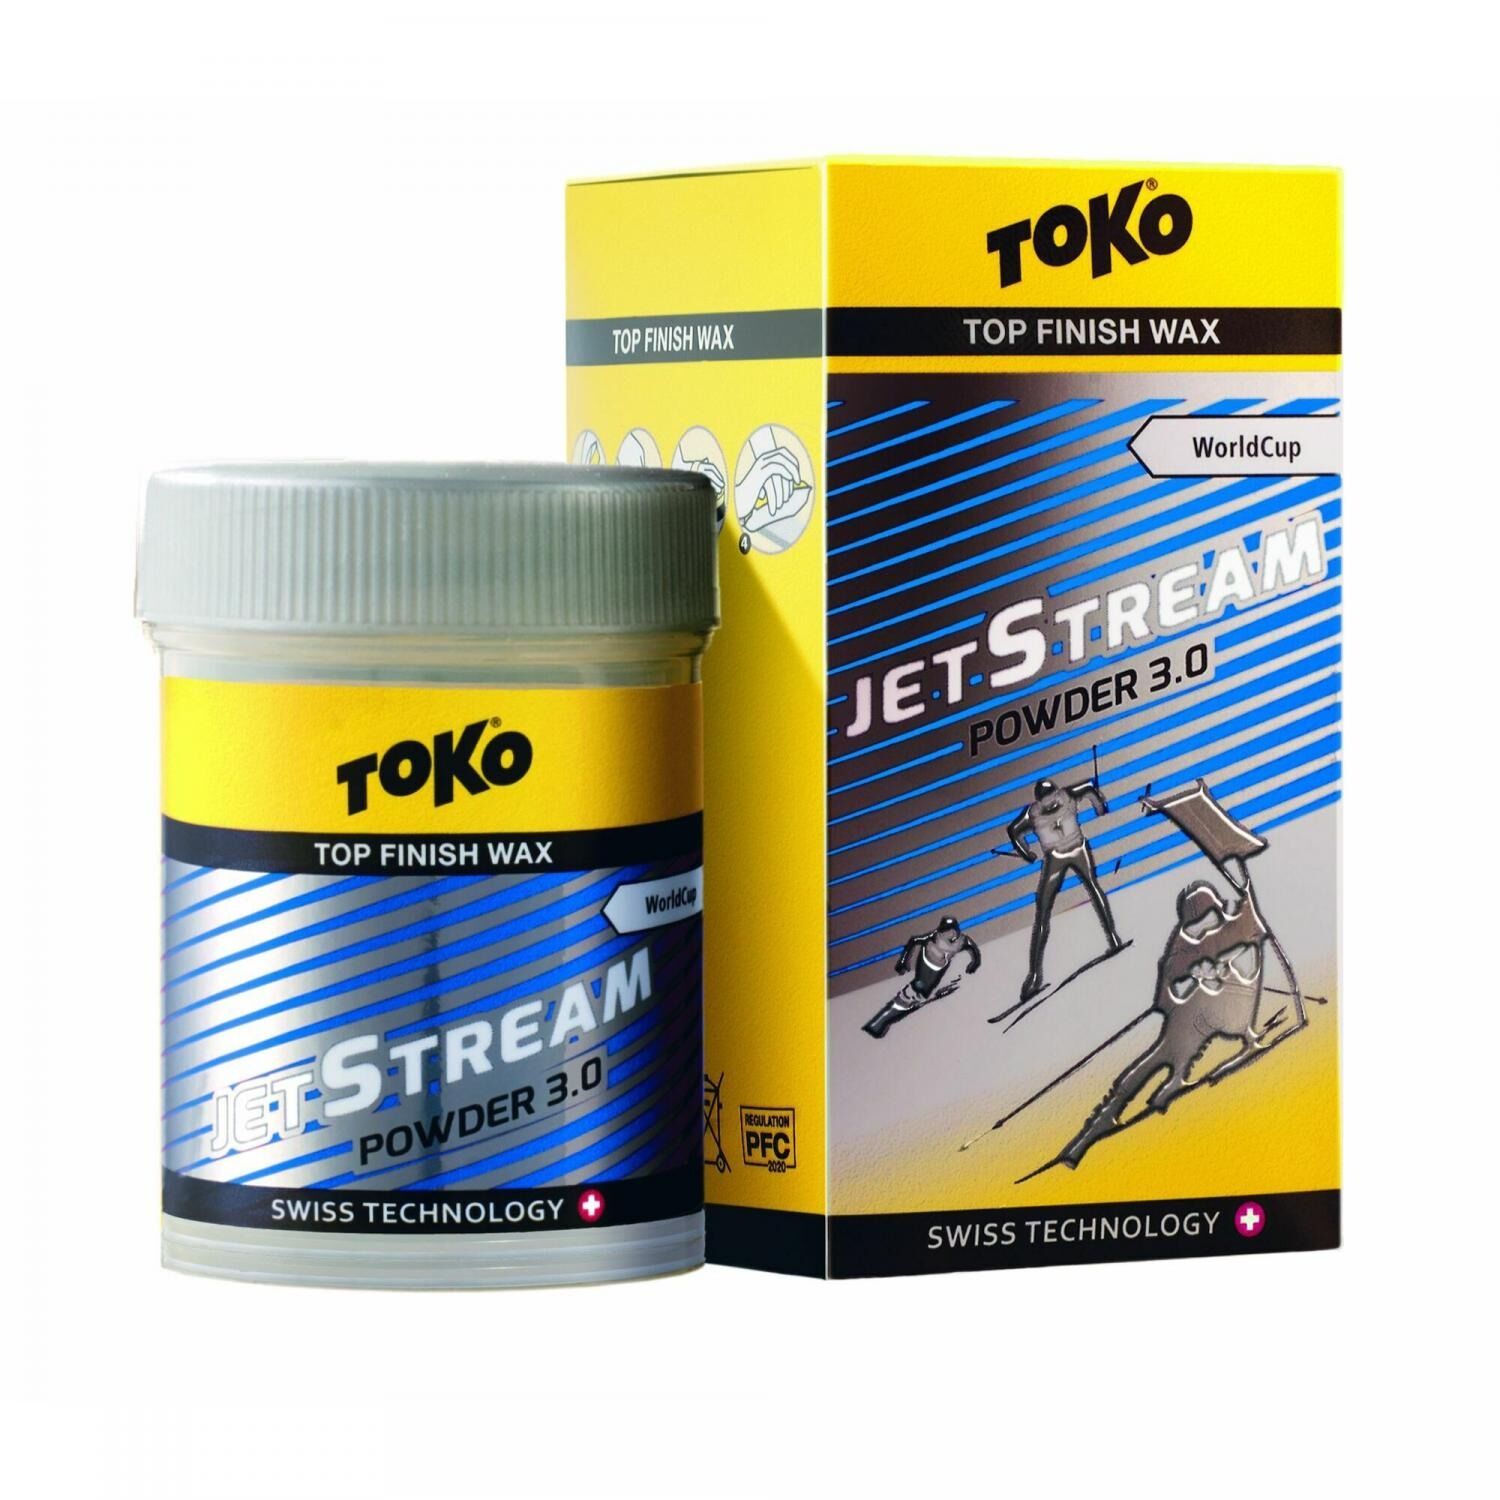 Toko JetStream Powder 3.0 Blå, pulverglider 5503016 2022